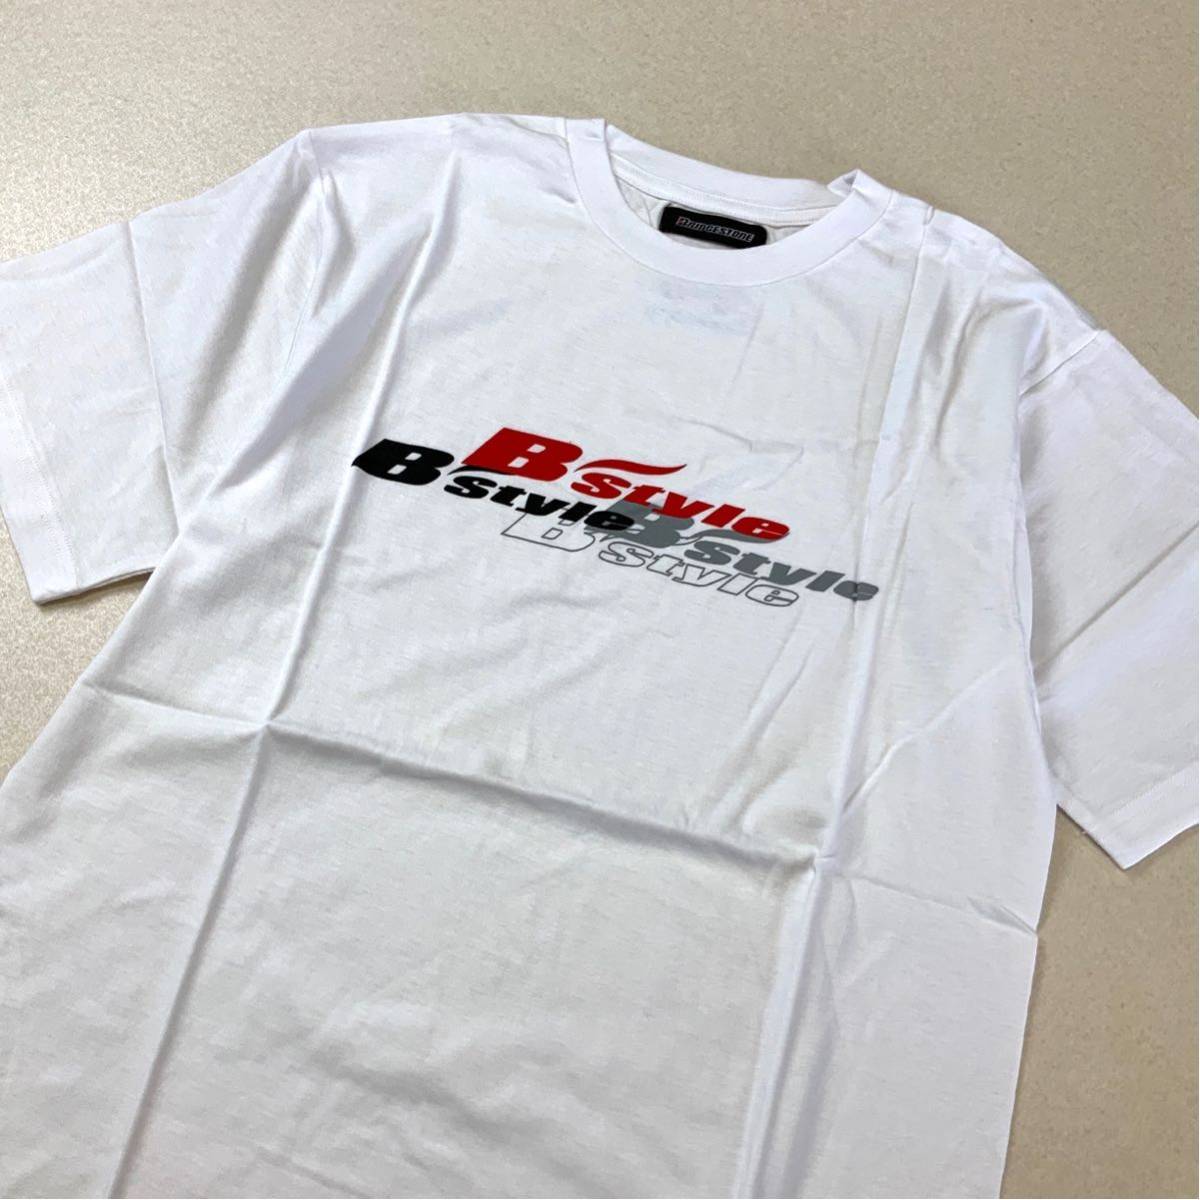 新品 未使用品 非売品 BRIDGESTONE ブリヂストン 半袖 tシャツ メンズ フリーサイズ ホワイト_画像4